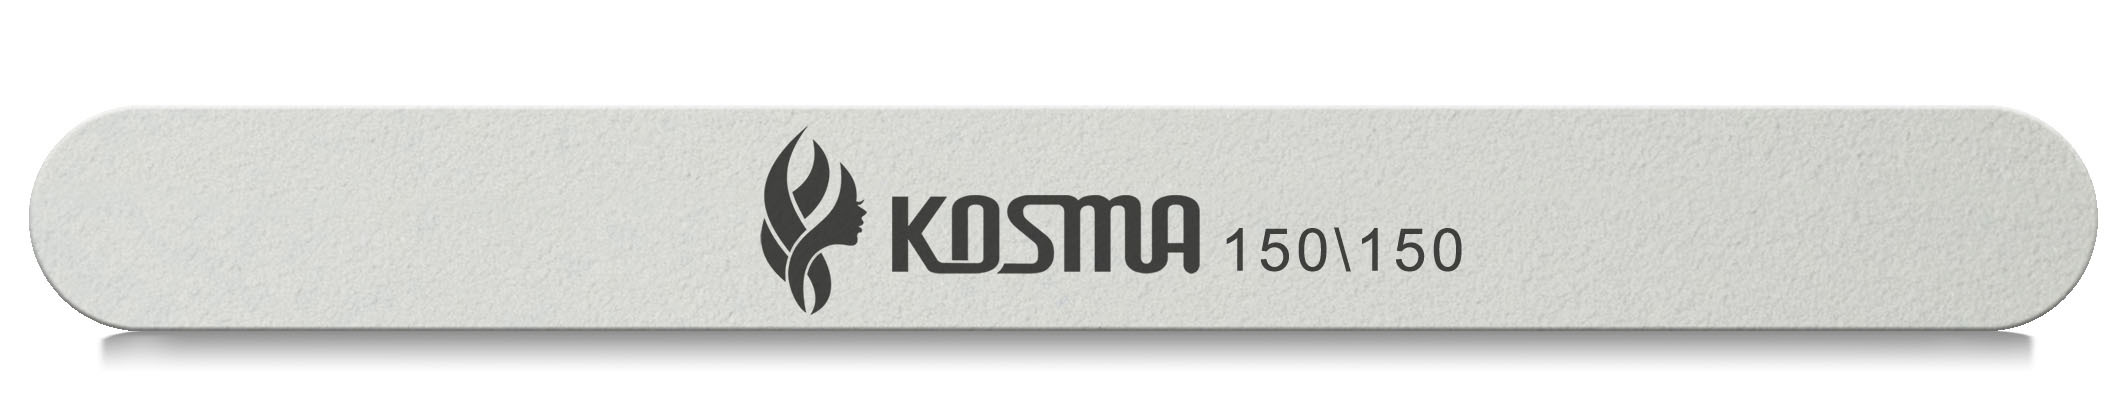 Пилка KOSMA прямая большая белая 150/150 пластиковая основа 1 шт.